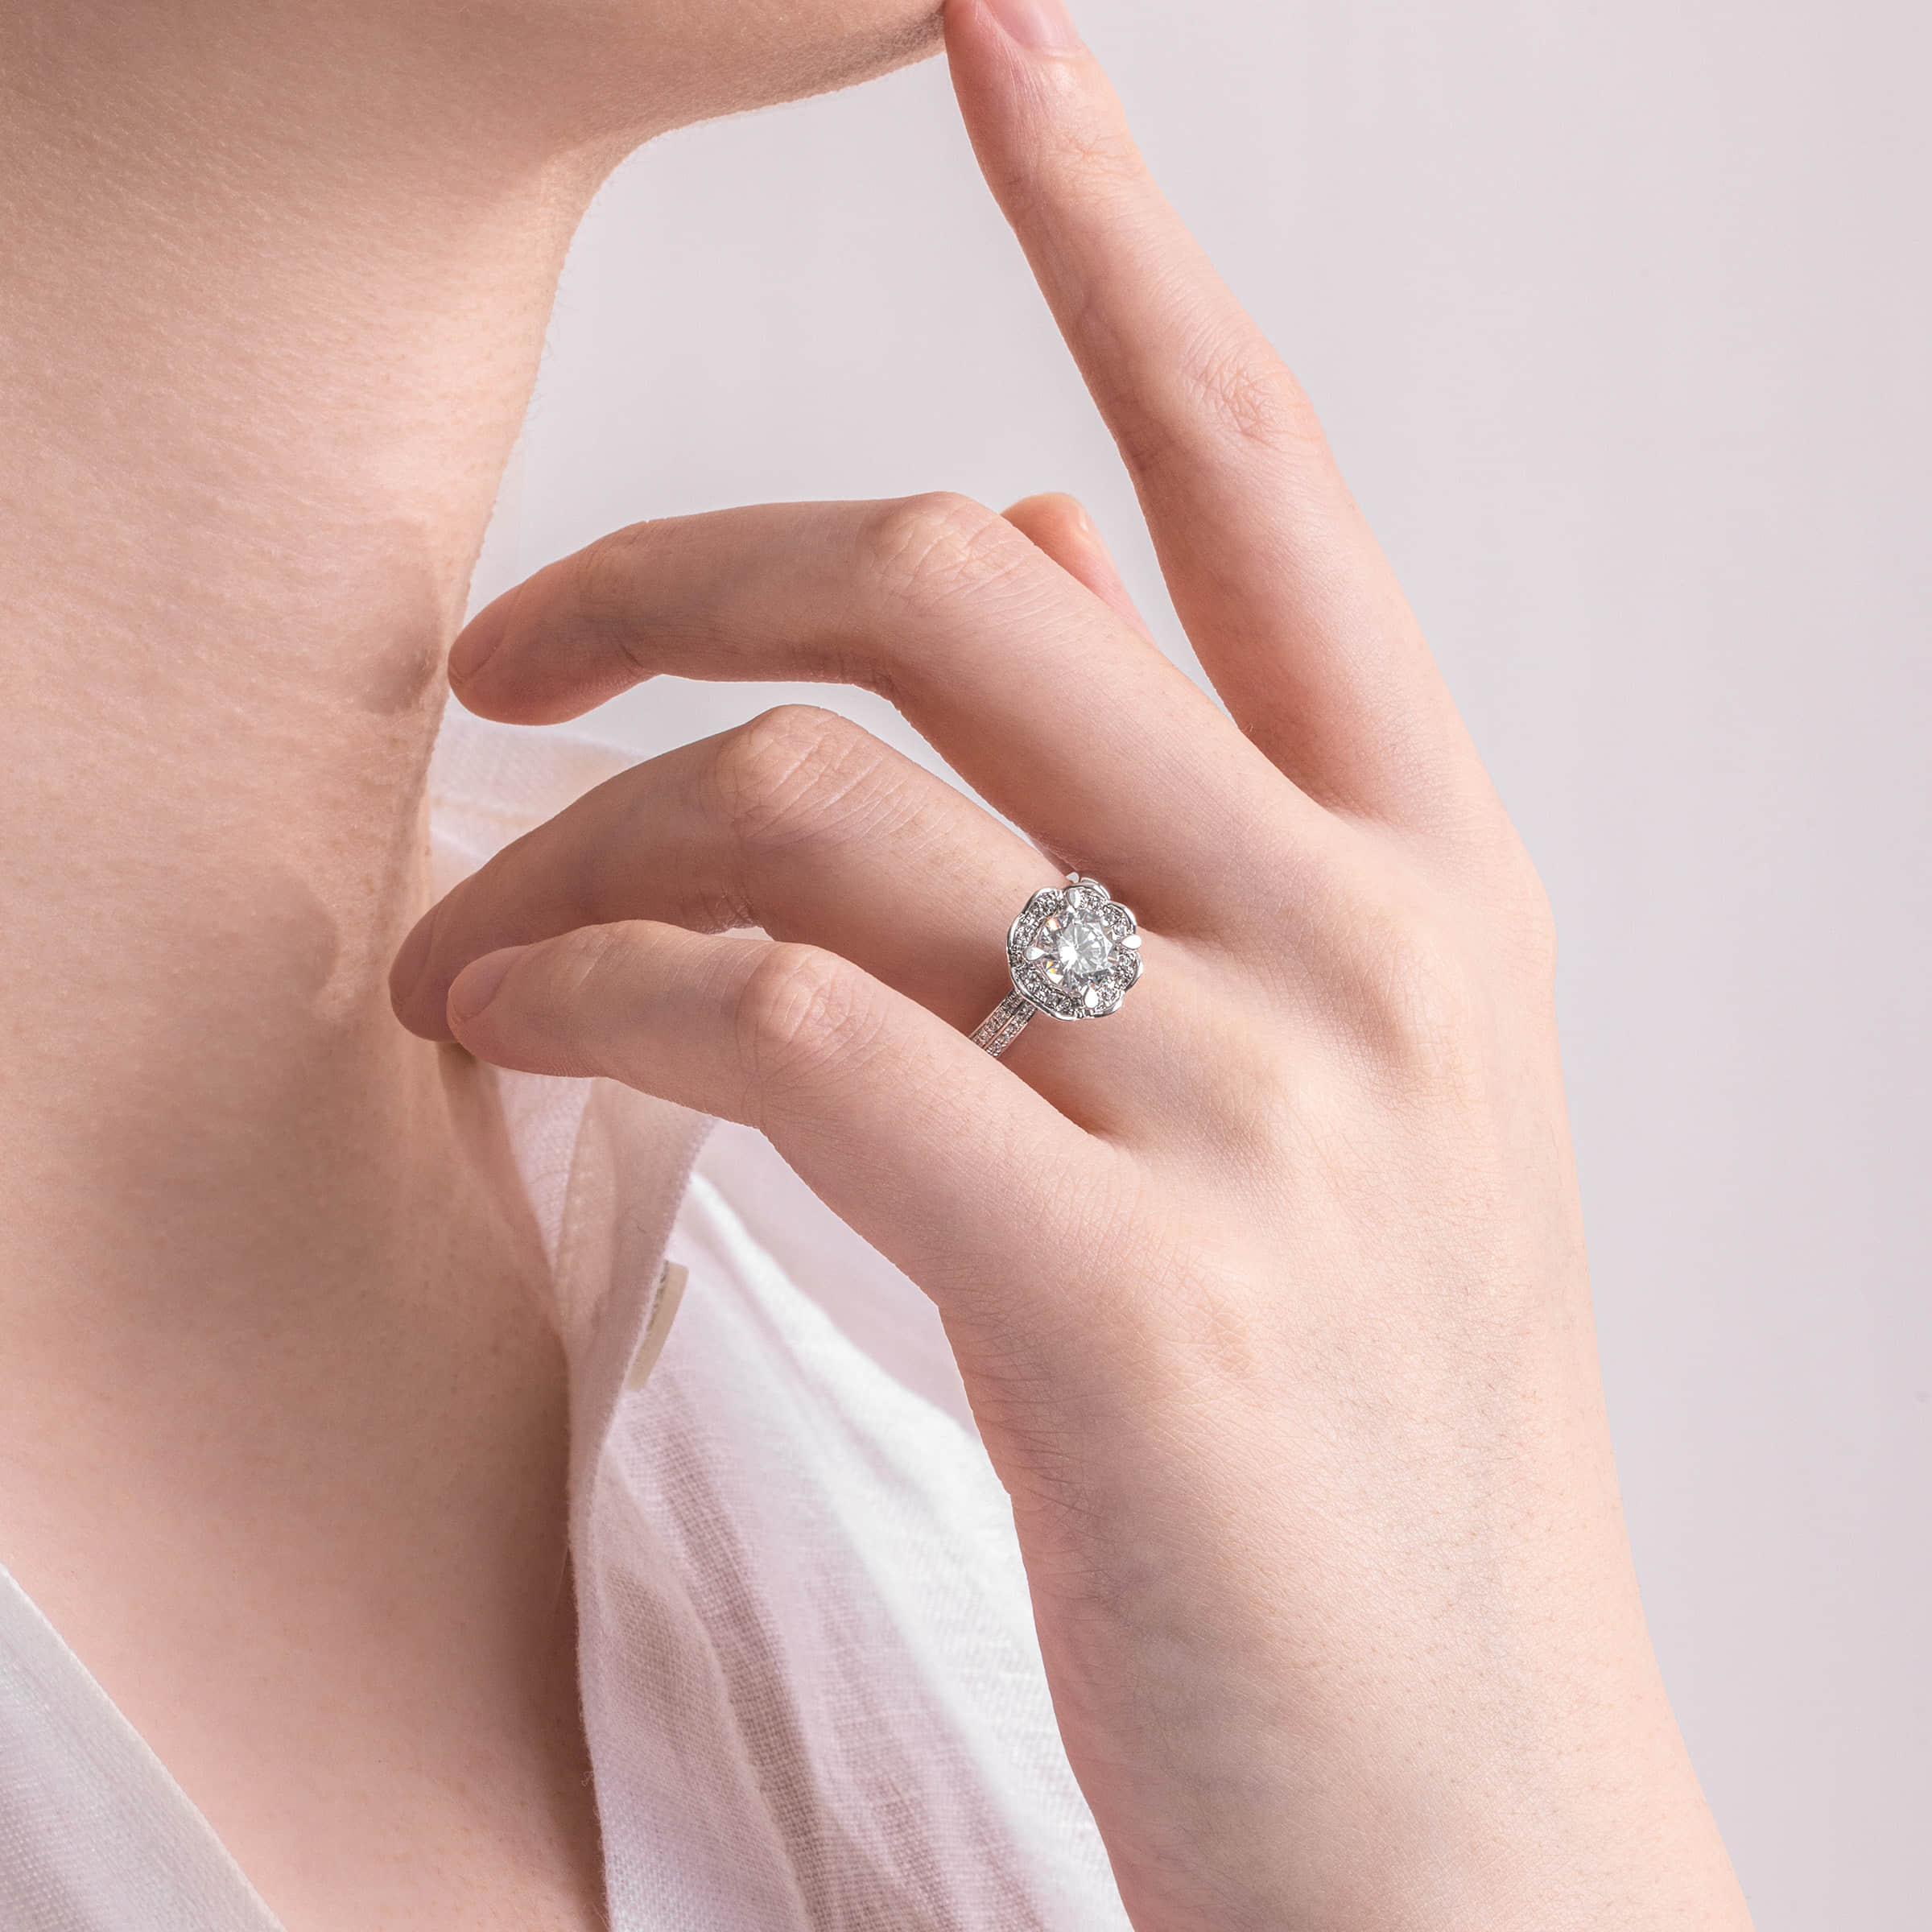 Darry Ring designer engagement ring on finger